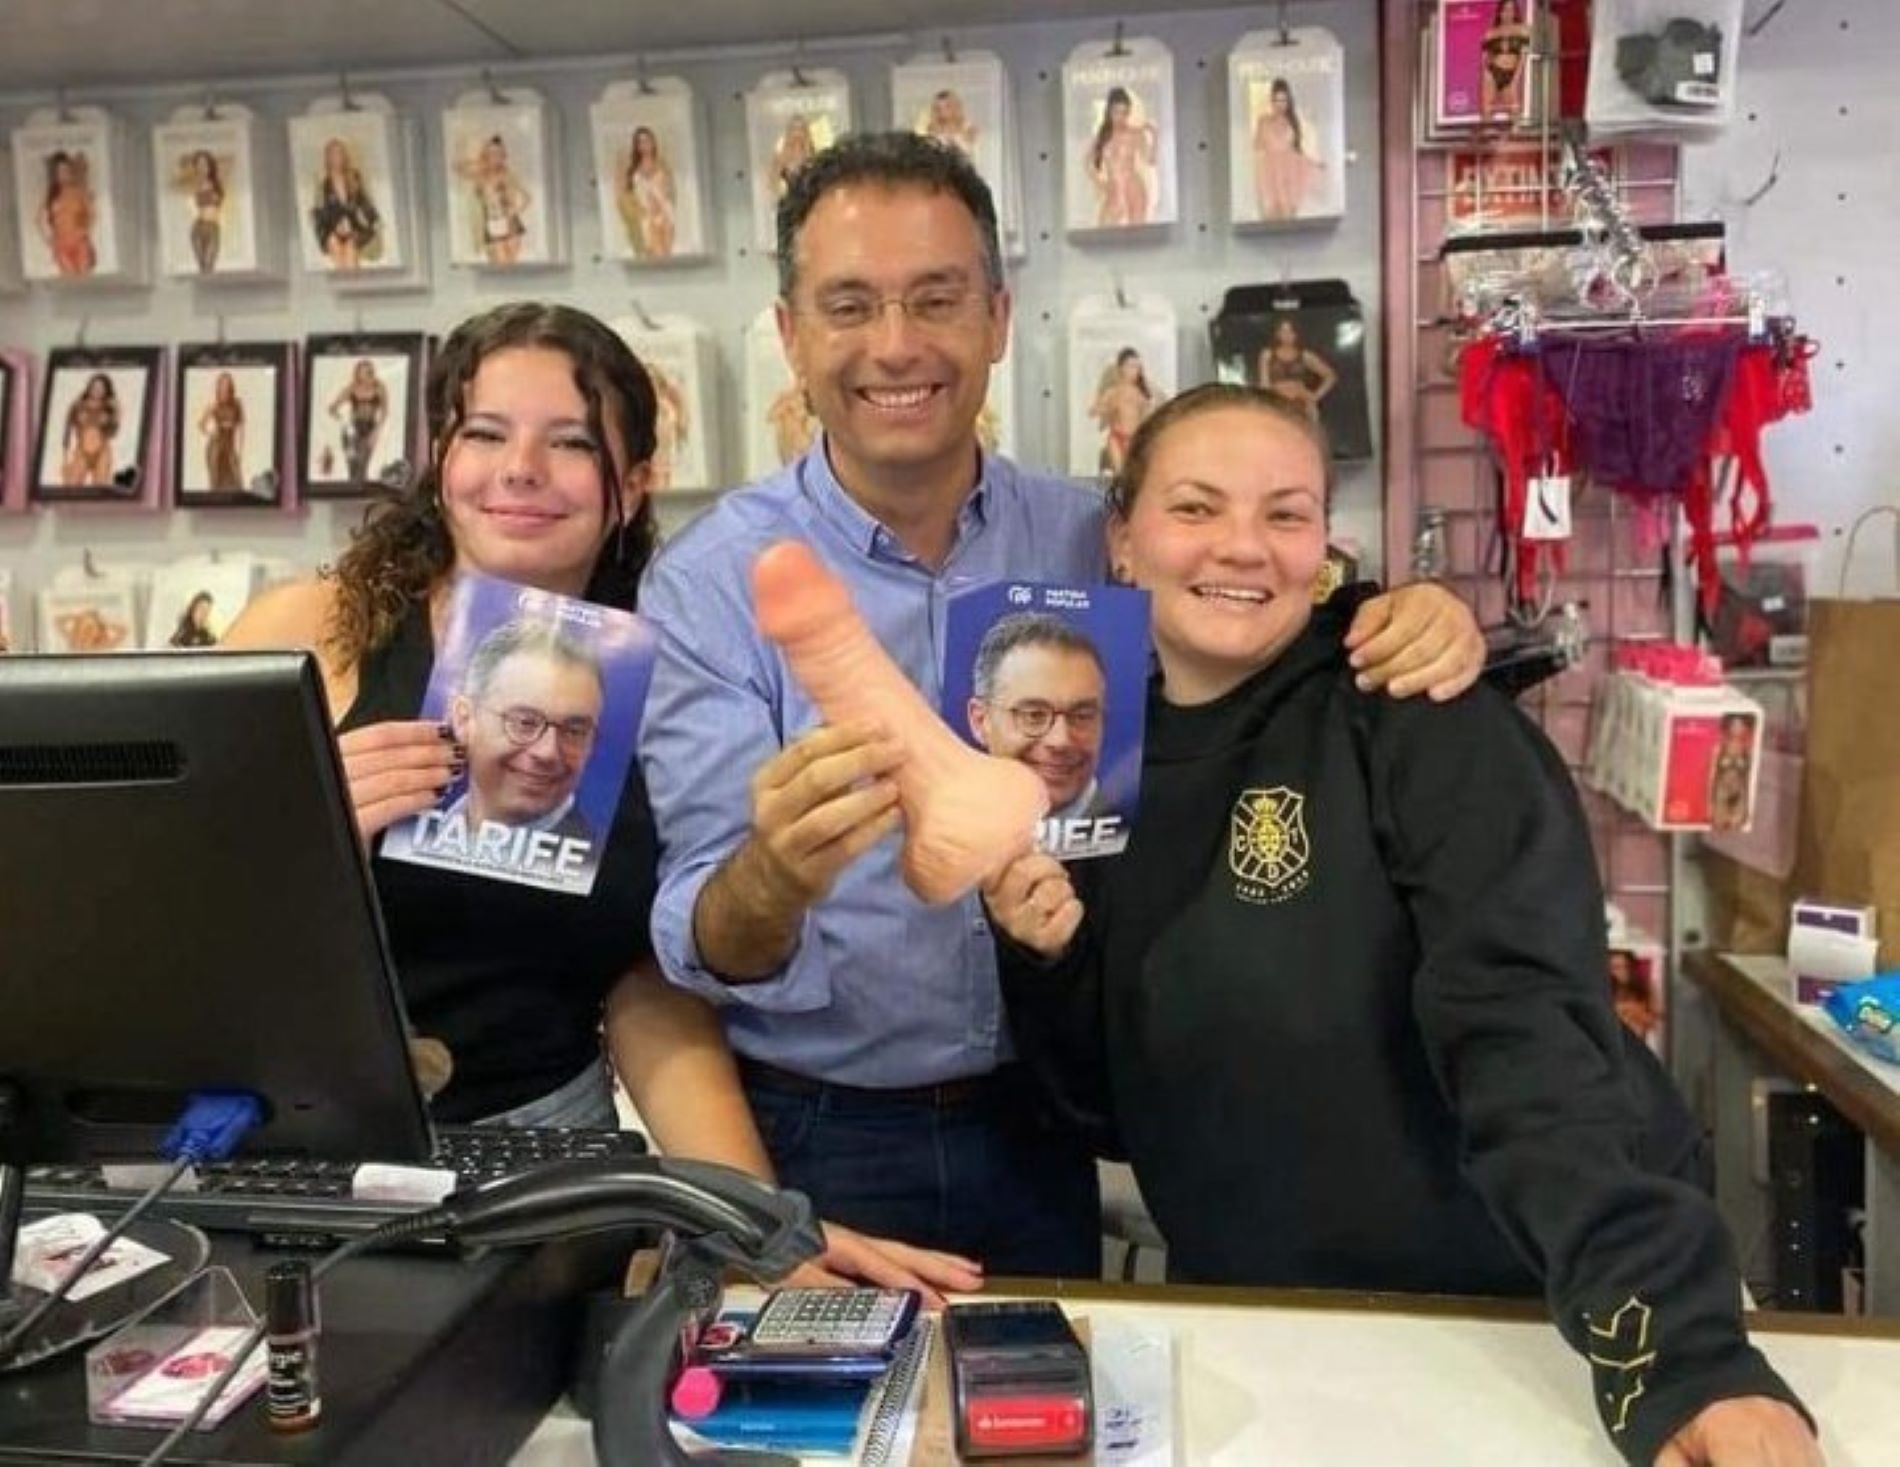 Polémica foto del candidato del PP en Santa Cruz de Tenerife con un pene de plástico